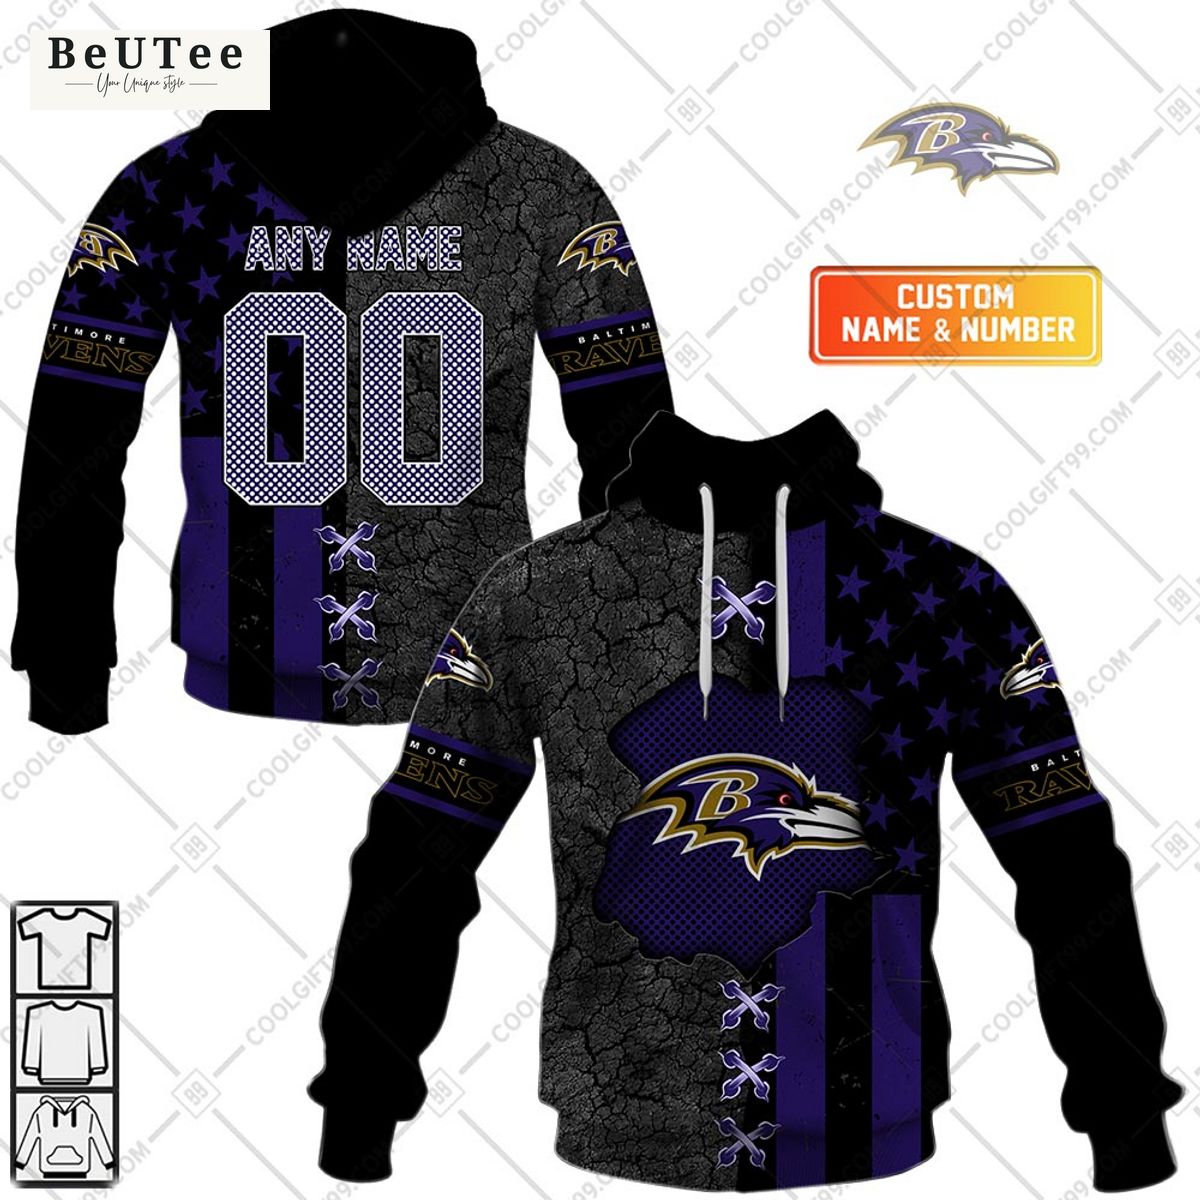 Baltimore Ravens USA flag custom printed hoodie shirt Nice shot bro